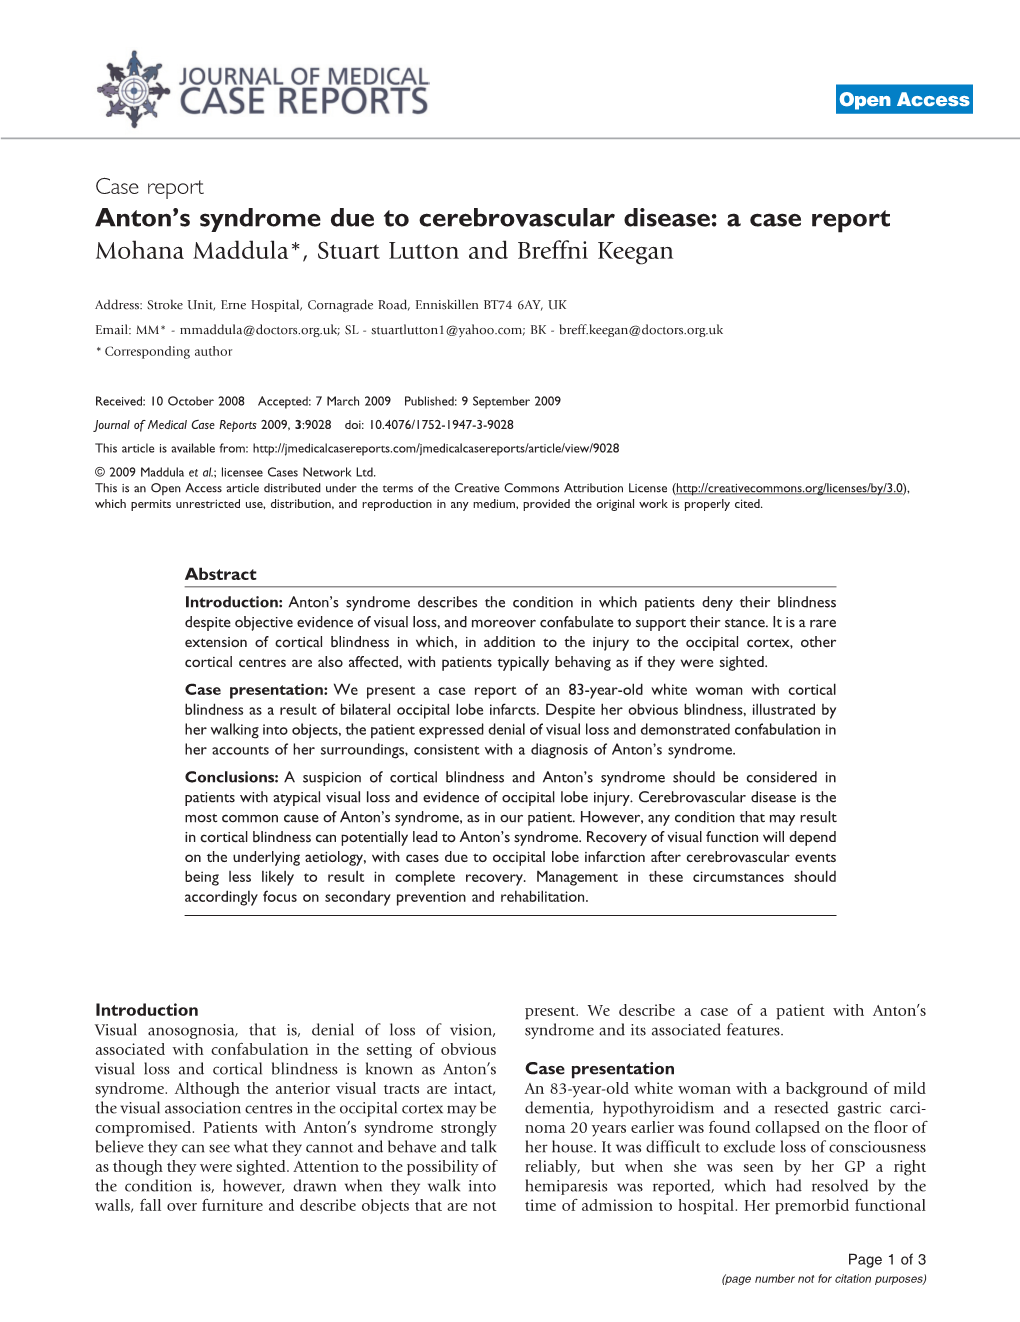 Antonps Syndrome Due to Cerebrovascular Disease: a Case